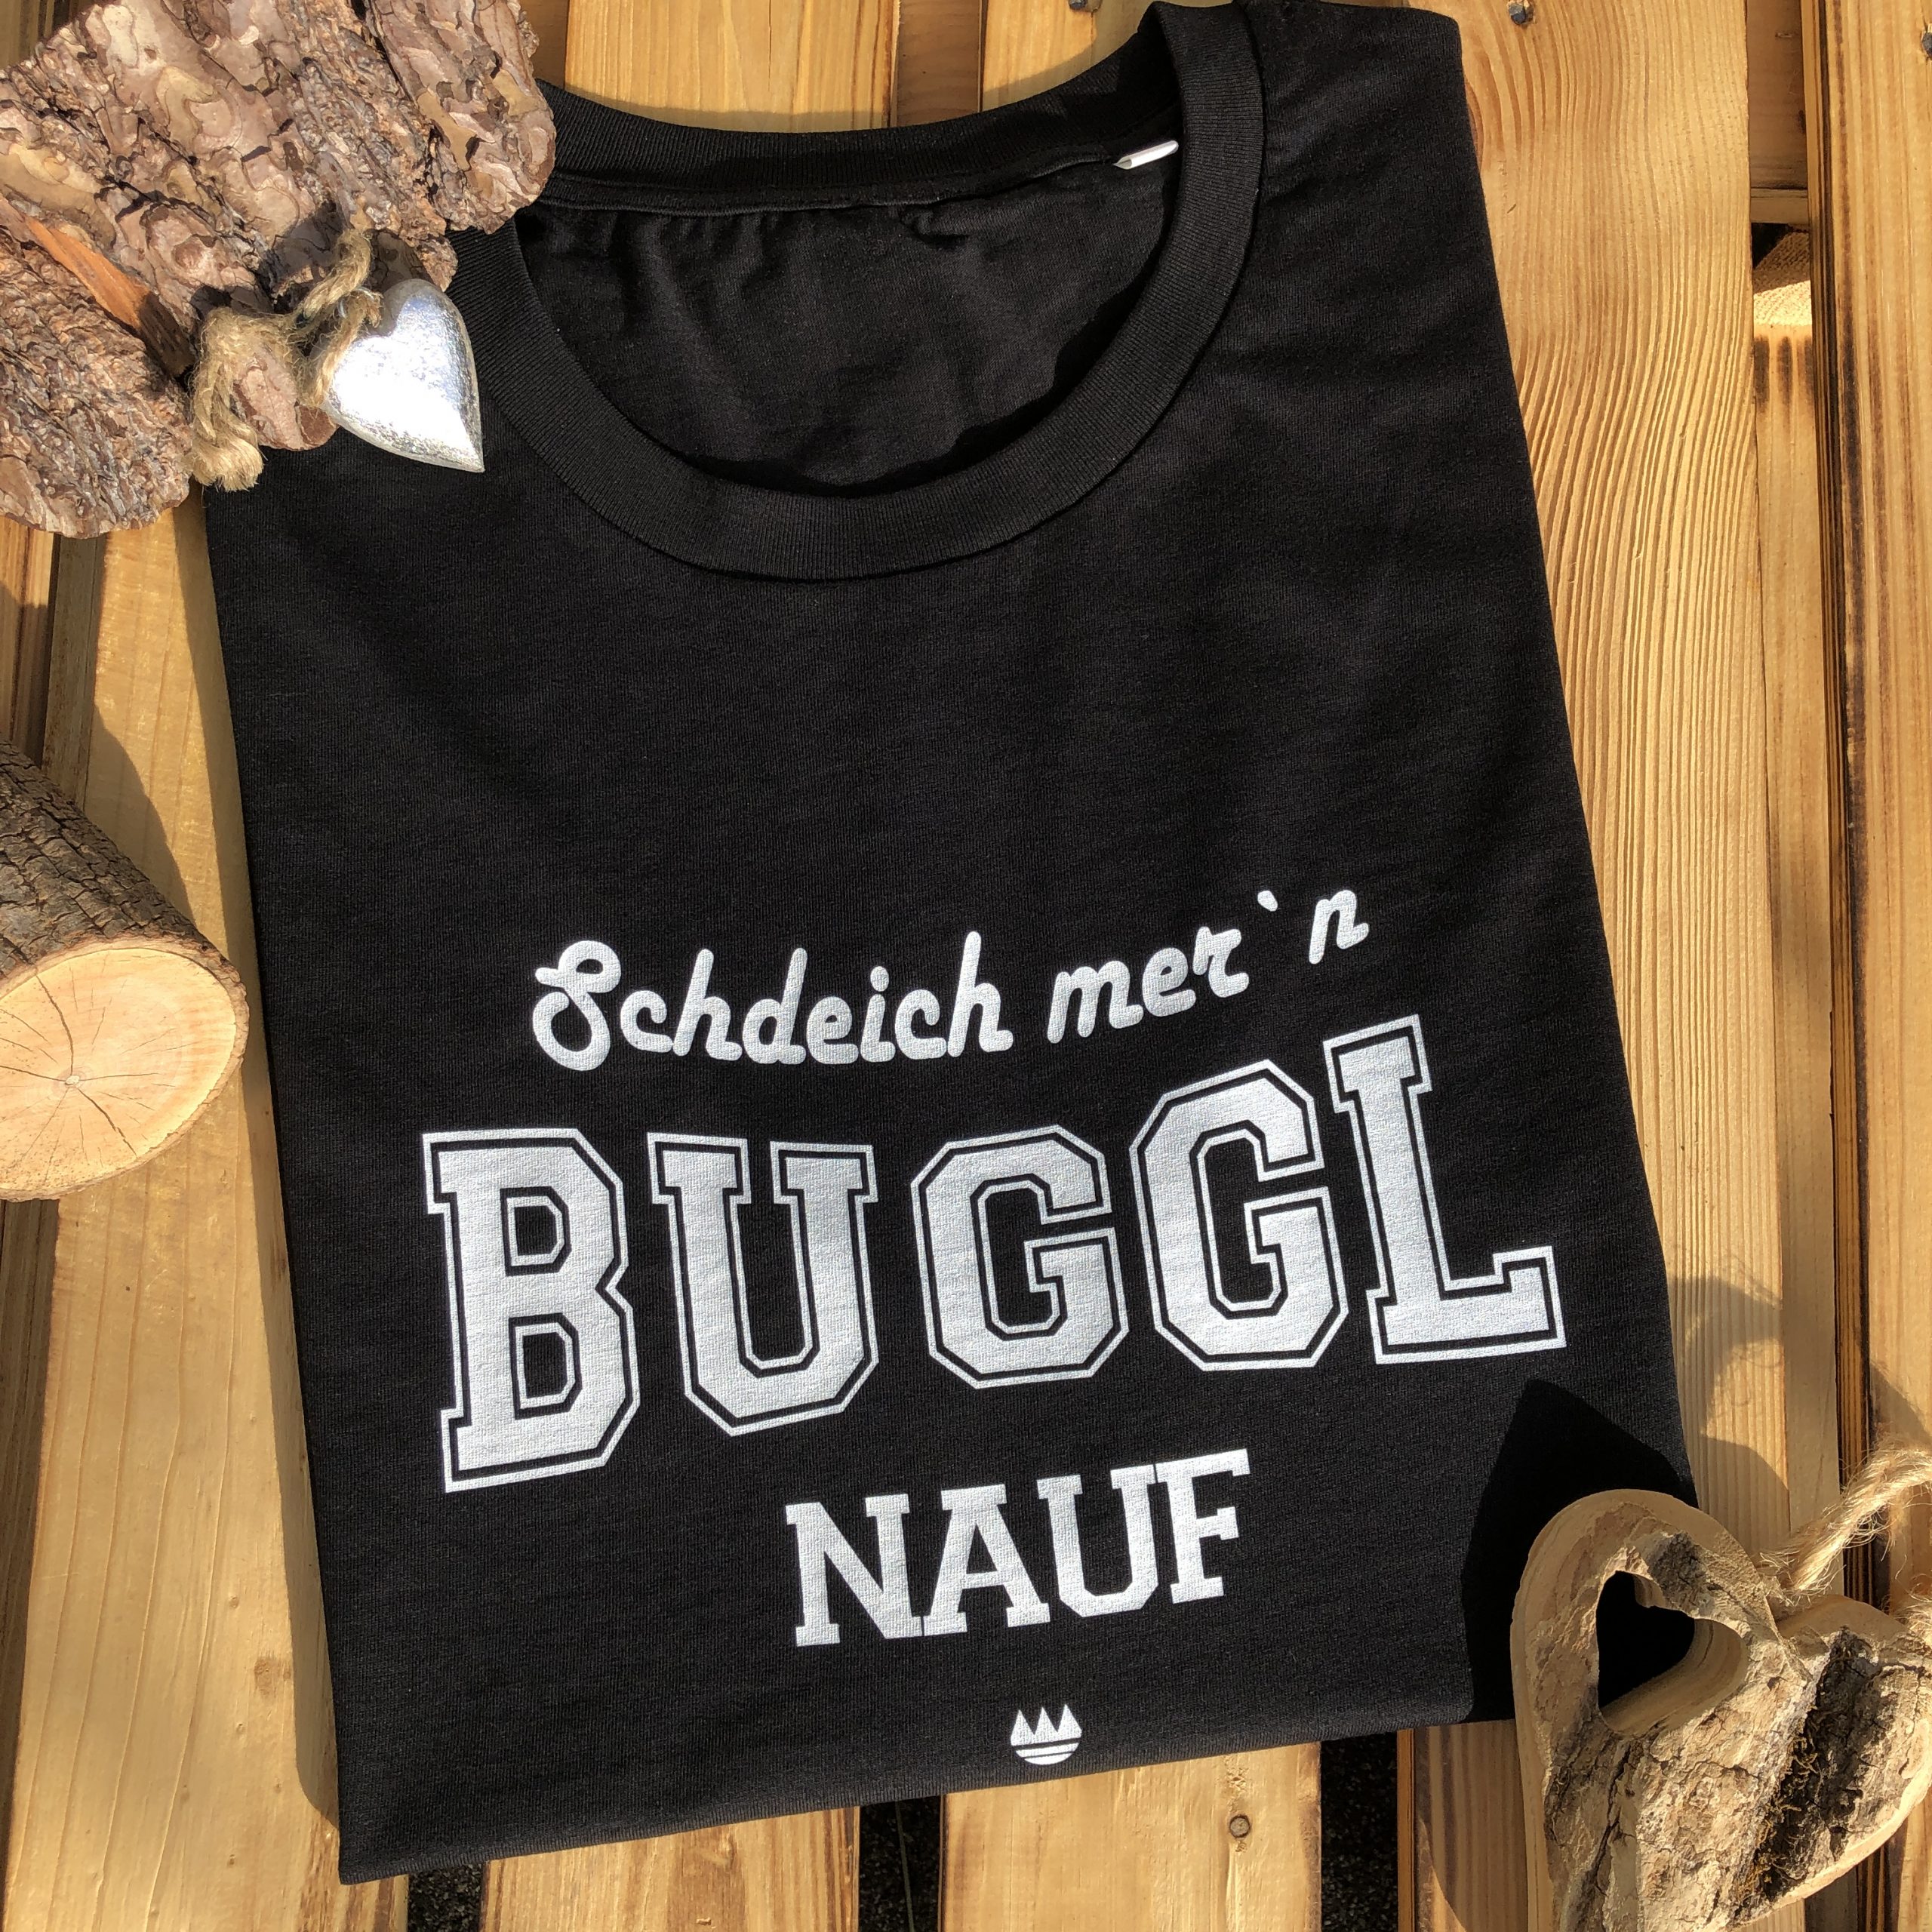 Schdeich mern Buggl nauf T-Shirt Frankenstyle Franken Shop